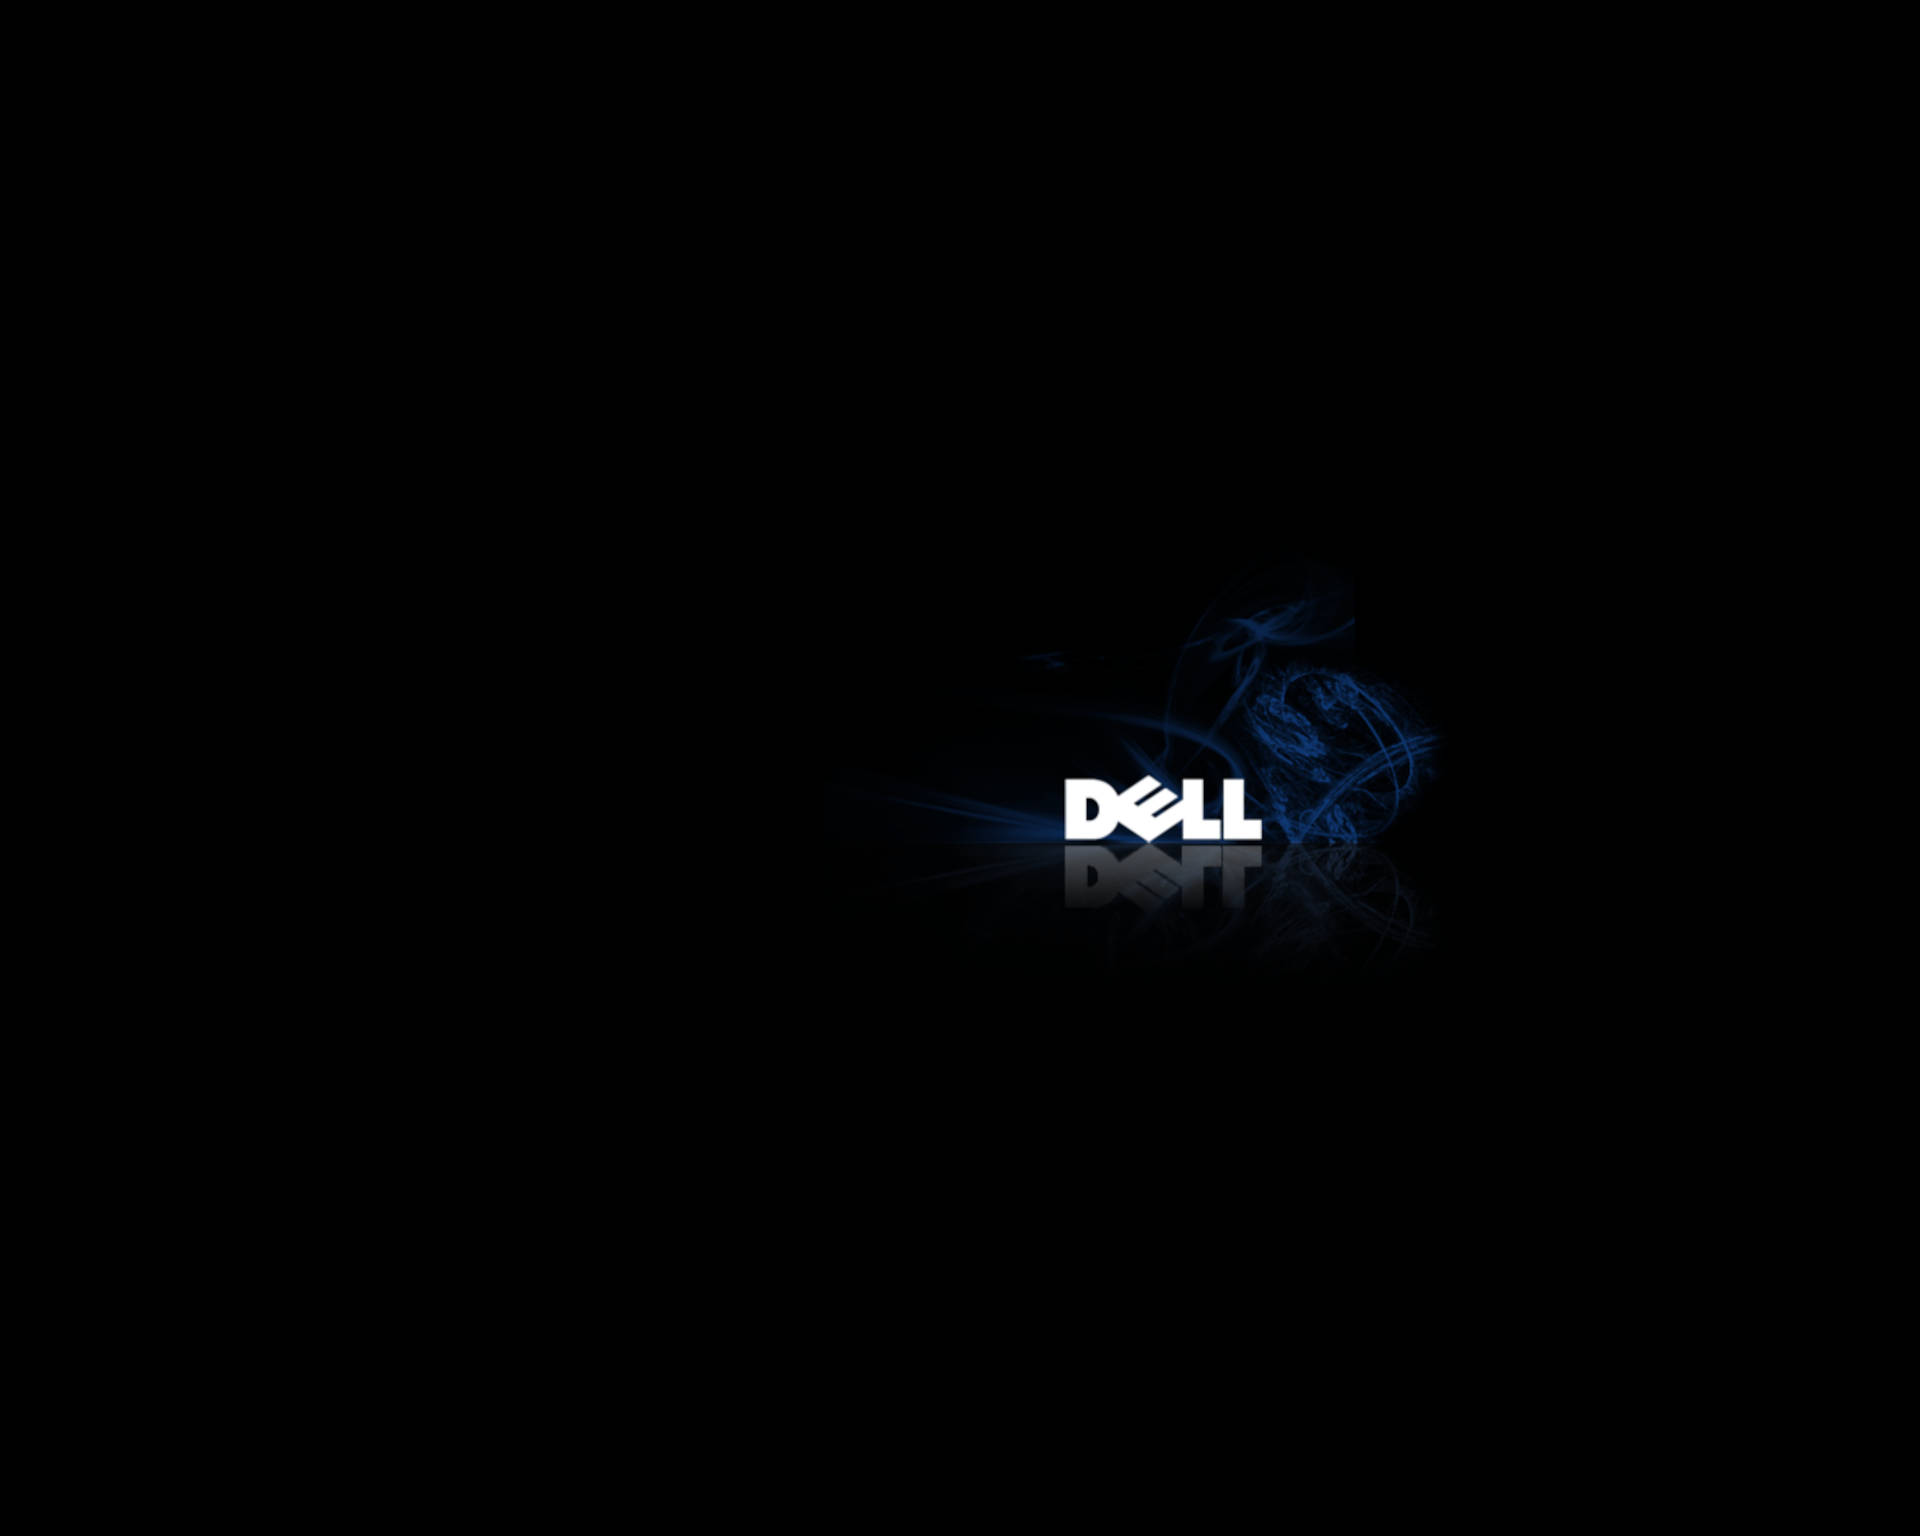 Hình nền  xe hơi Xe máy vi tính nhãn hiệu Dell Bánh xe Ảnh chụp màn  hình Hình nền máy tính Thiết kế ô tô Ô tô làm phông chữ 1680x1026 